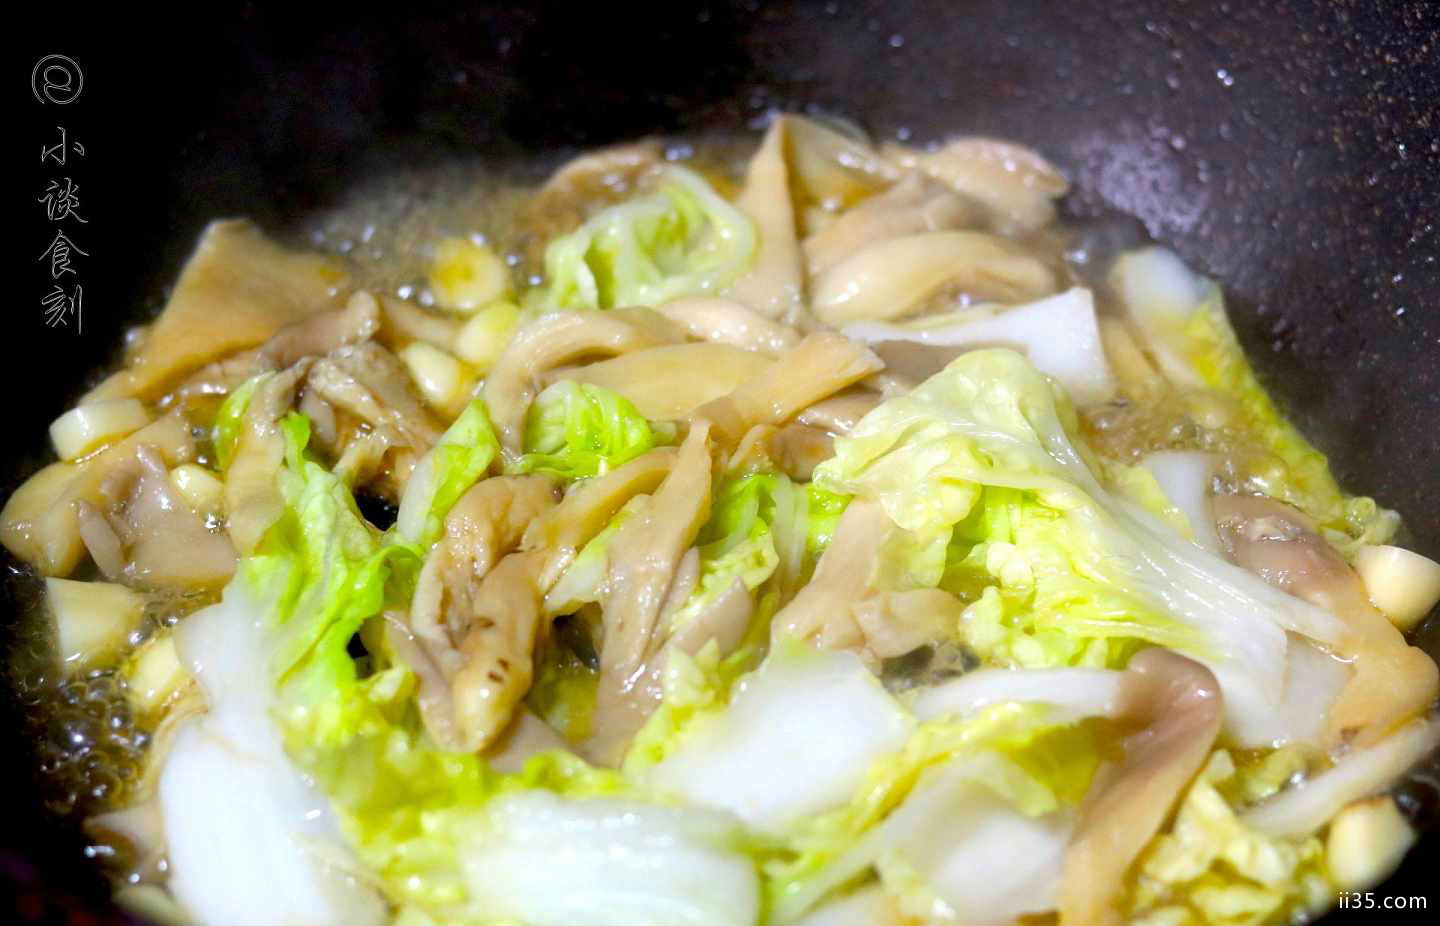 炒到好吃,就做了一道营养又好吃的家常菜,平菇炒白菜.4.